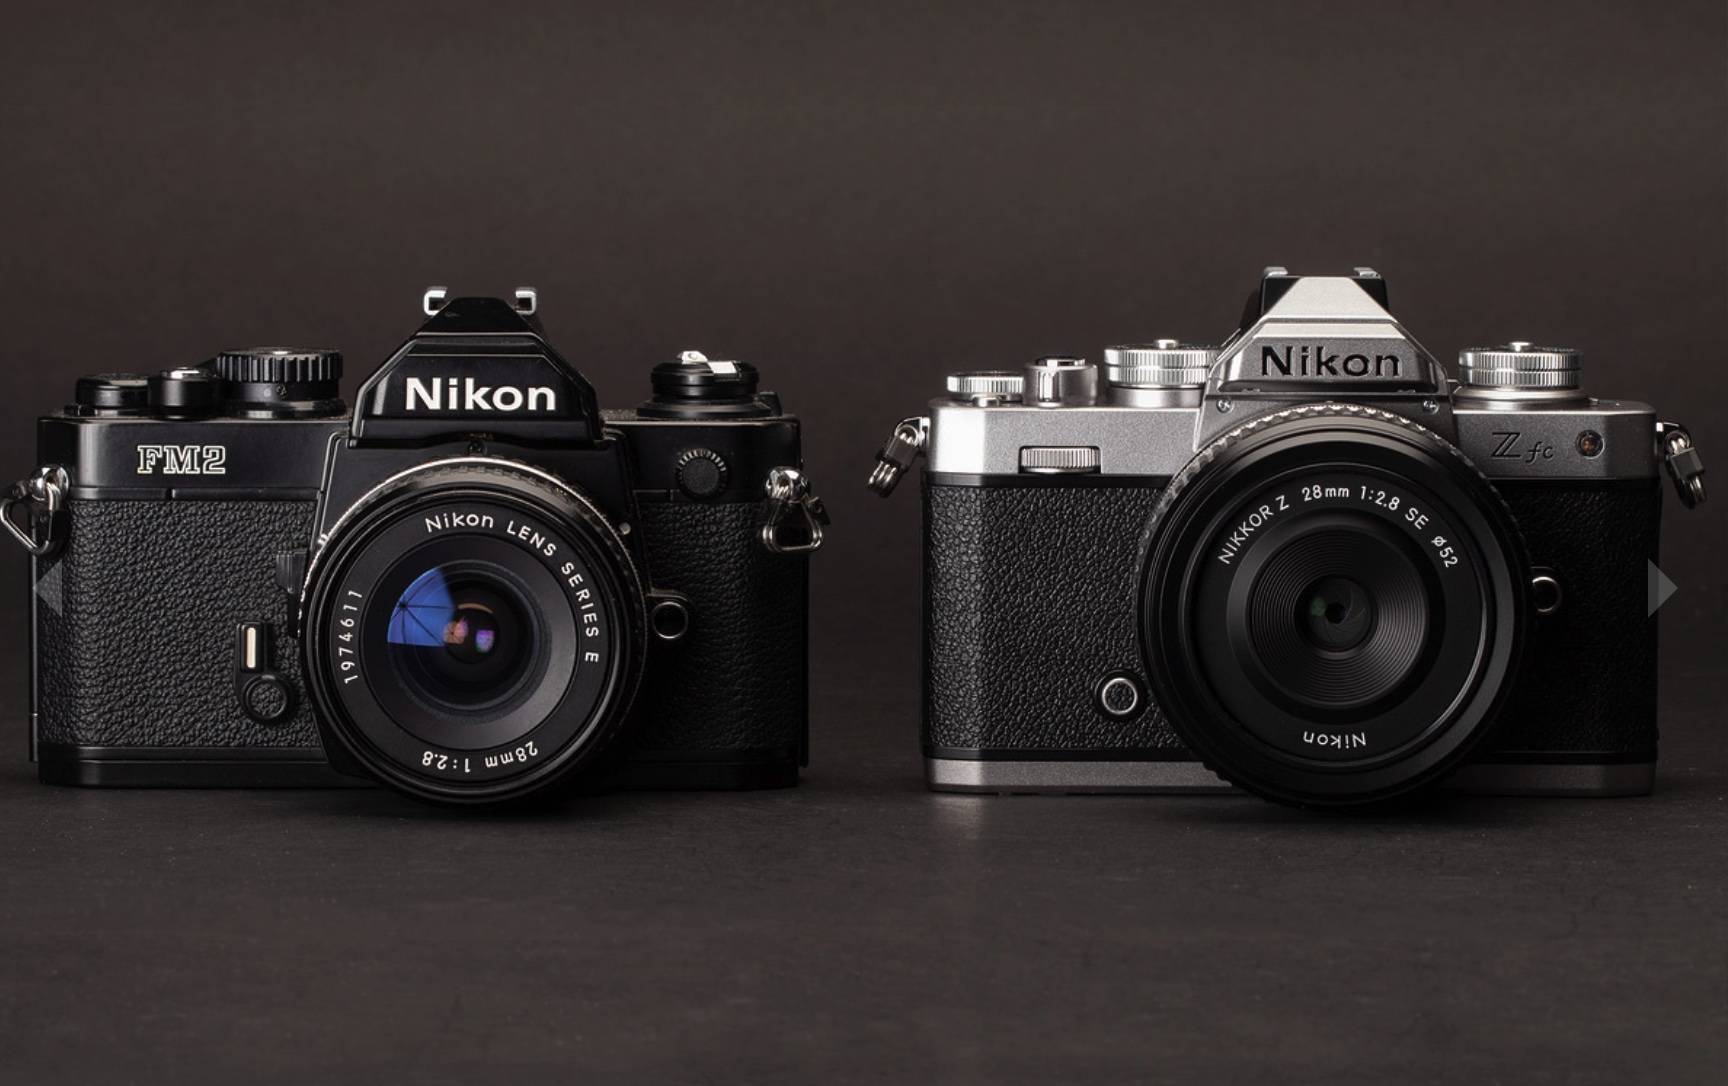 Neugravur der klassischen FM2, Nikon spiegellose Kamera Z fc veröffentlicht - iShot2021 06 29 19.37.45